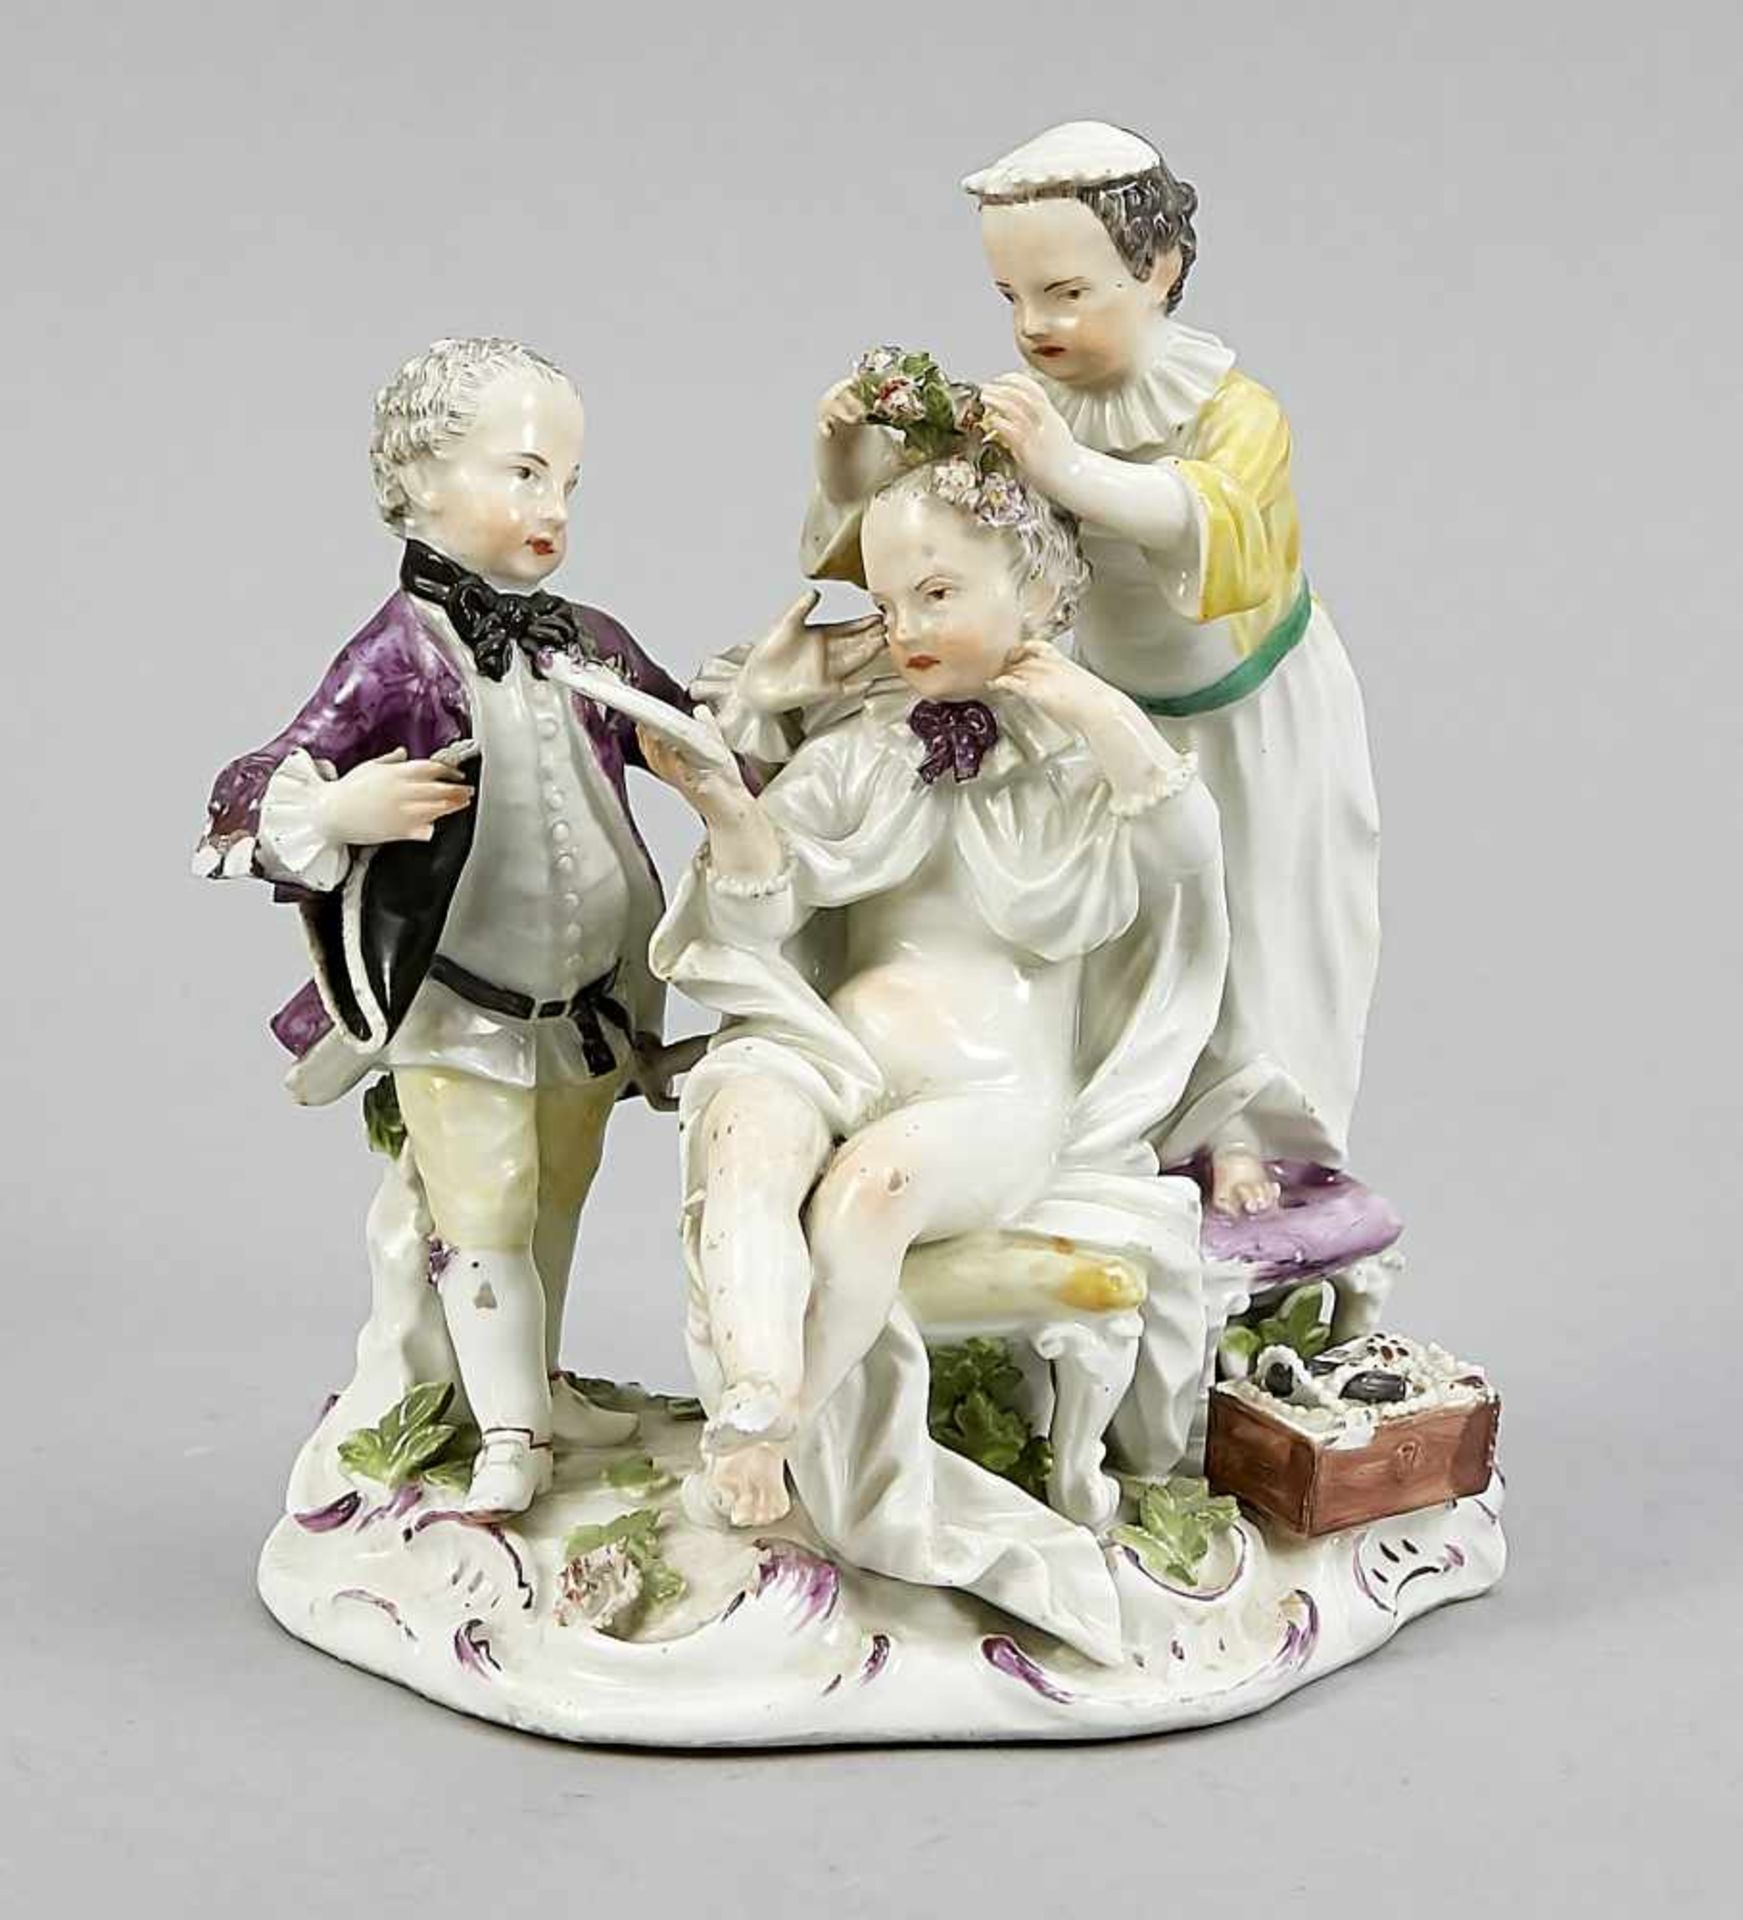 Figure group, Meissen, 19th century, designed by Johann Joachim Kaendler in 1759, model